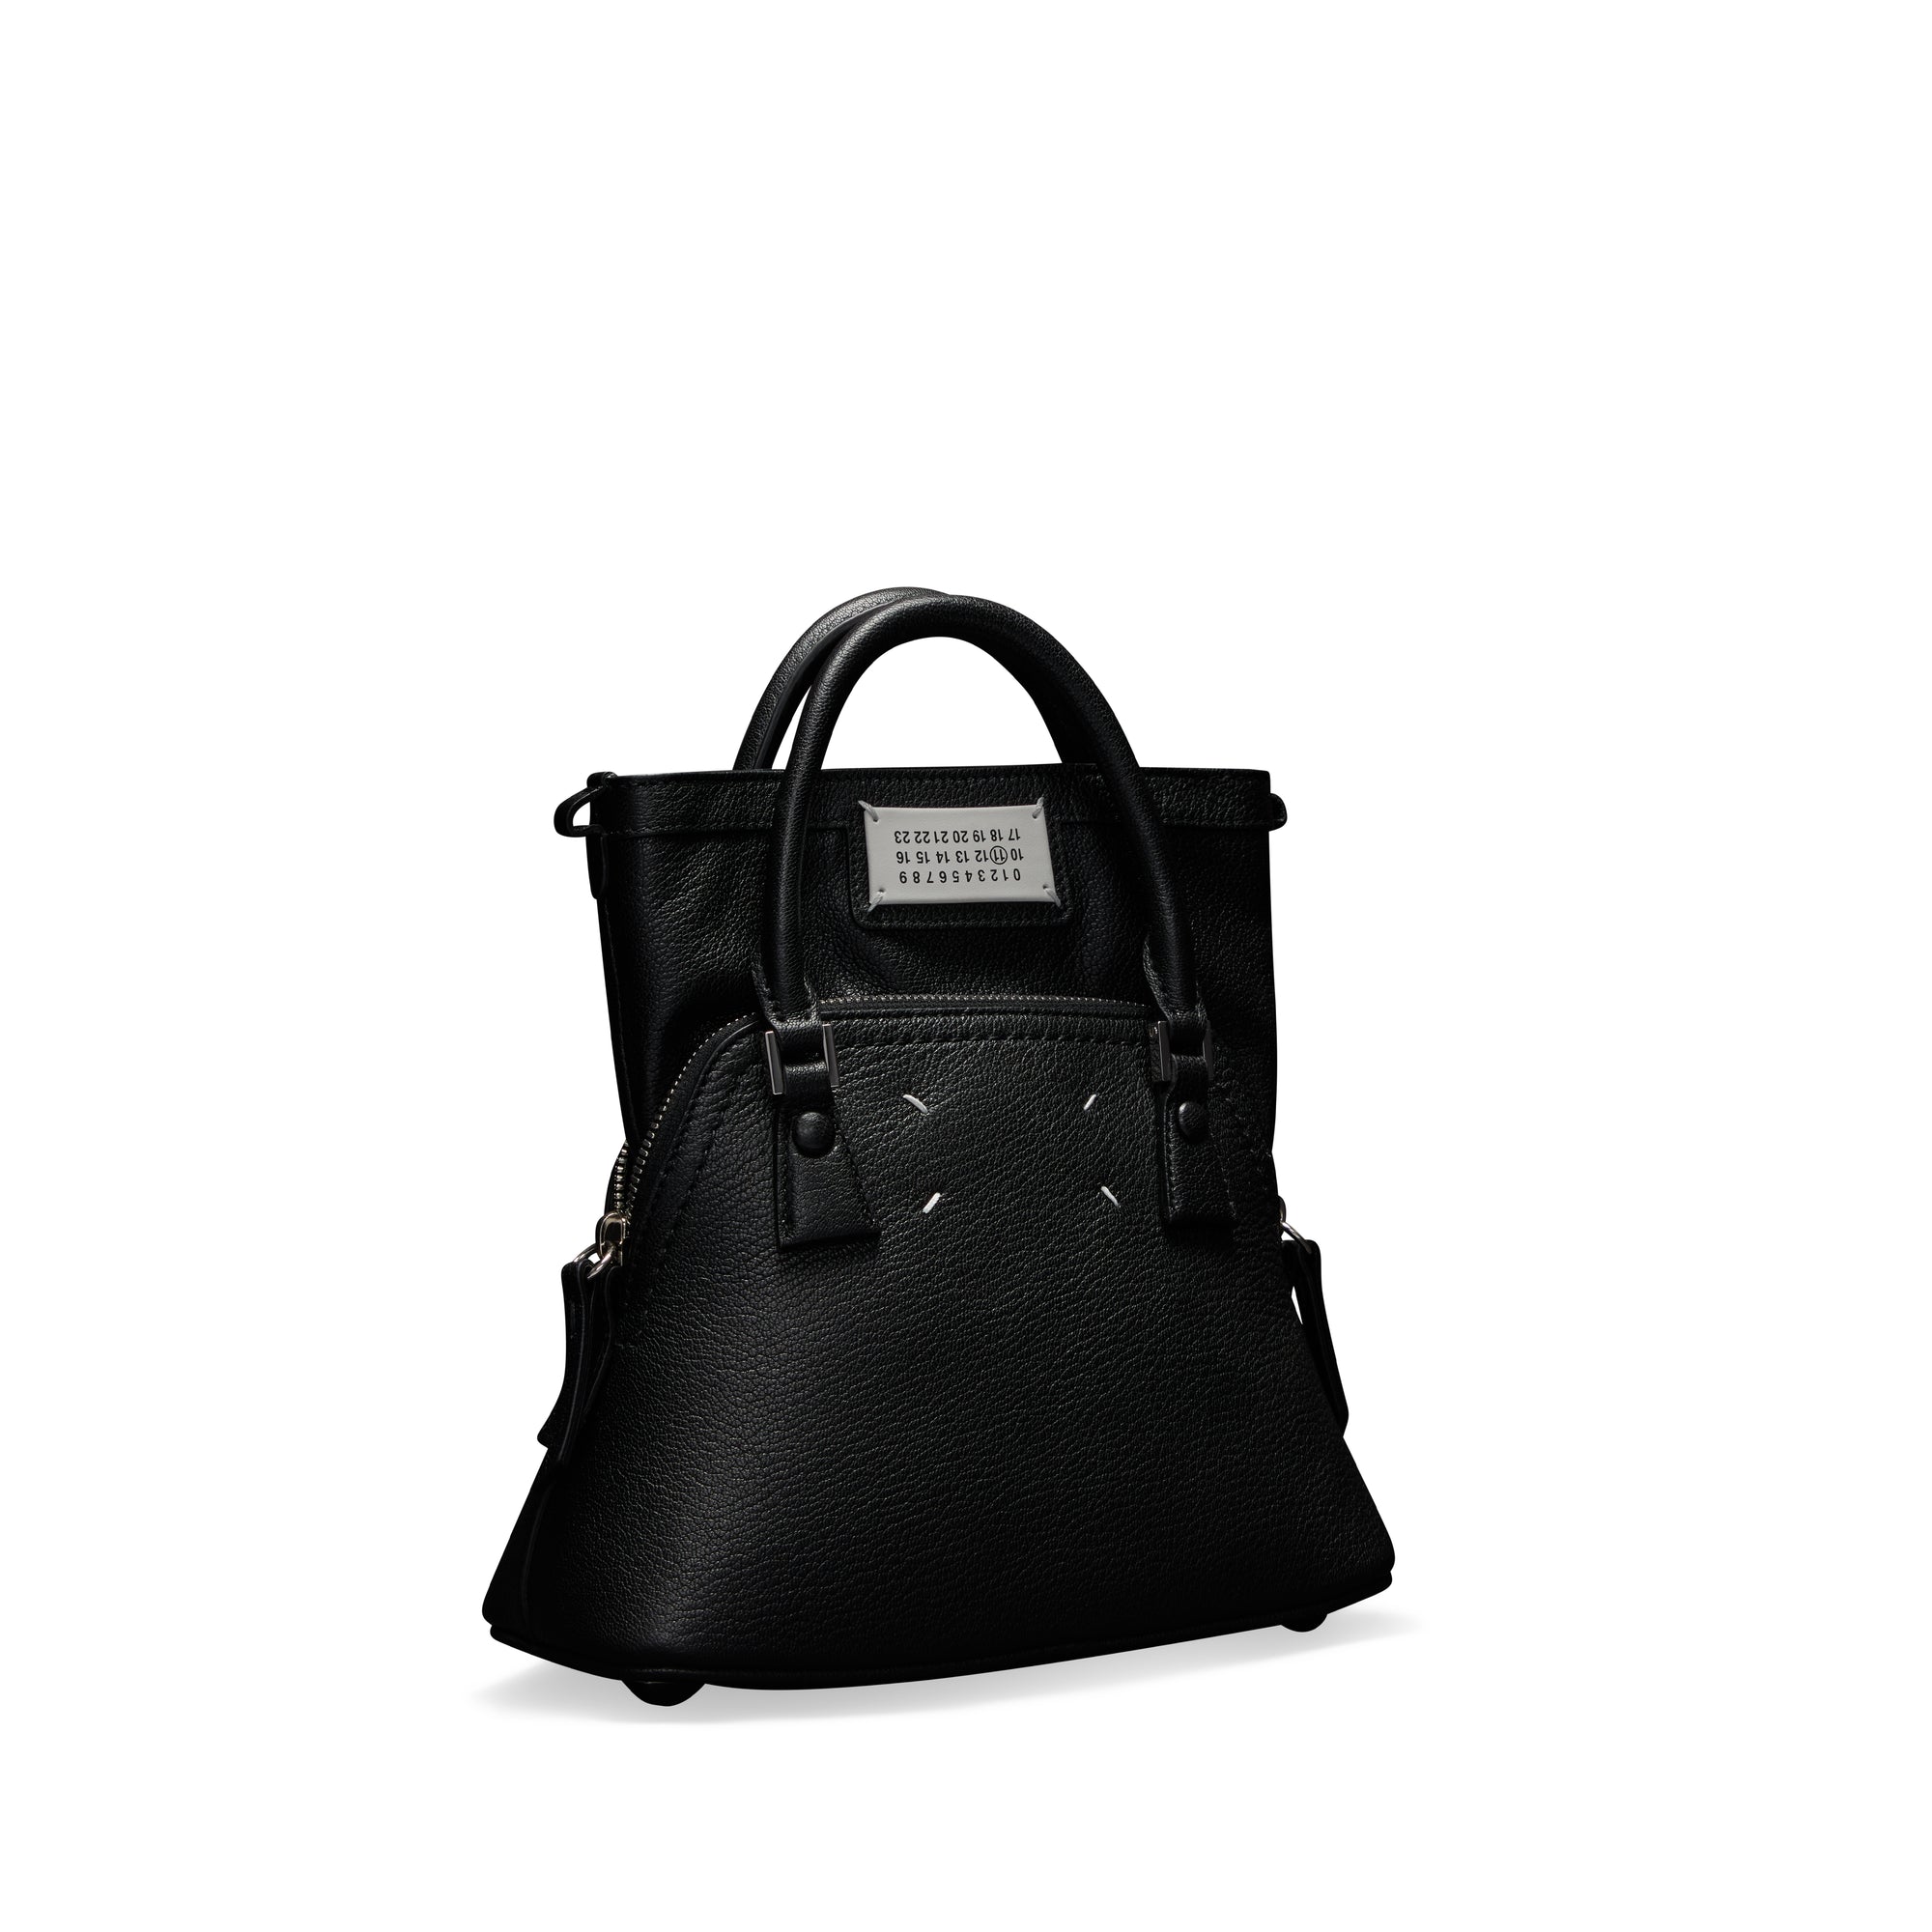 Maison Margiela - Women’s 5AC Classique Micro Bag - (Black) view 2